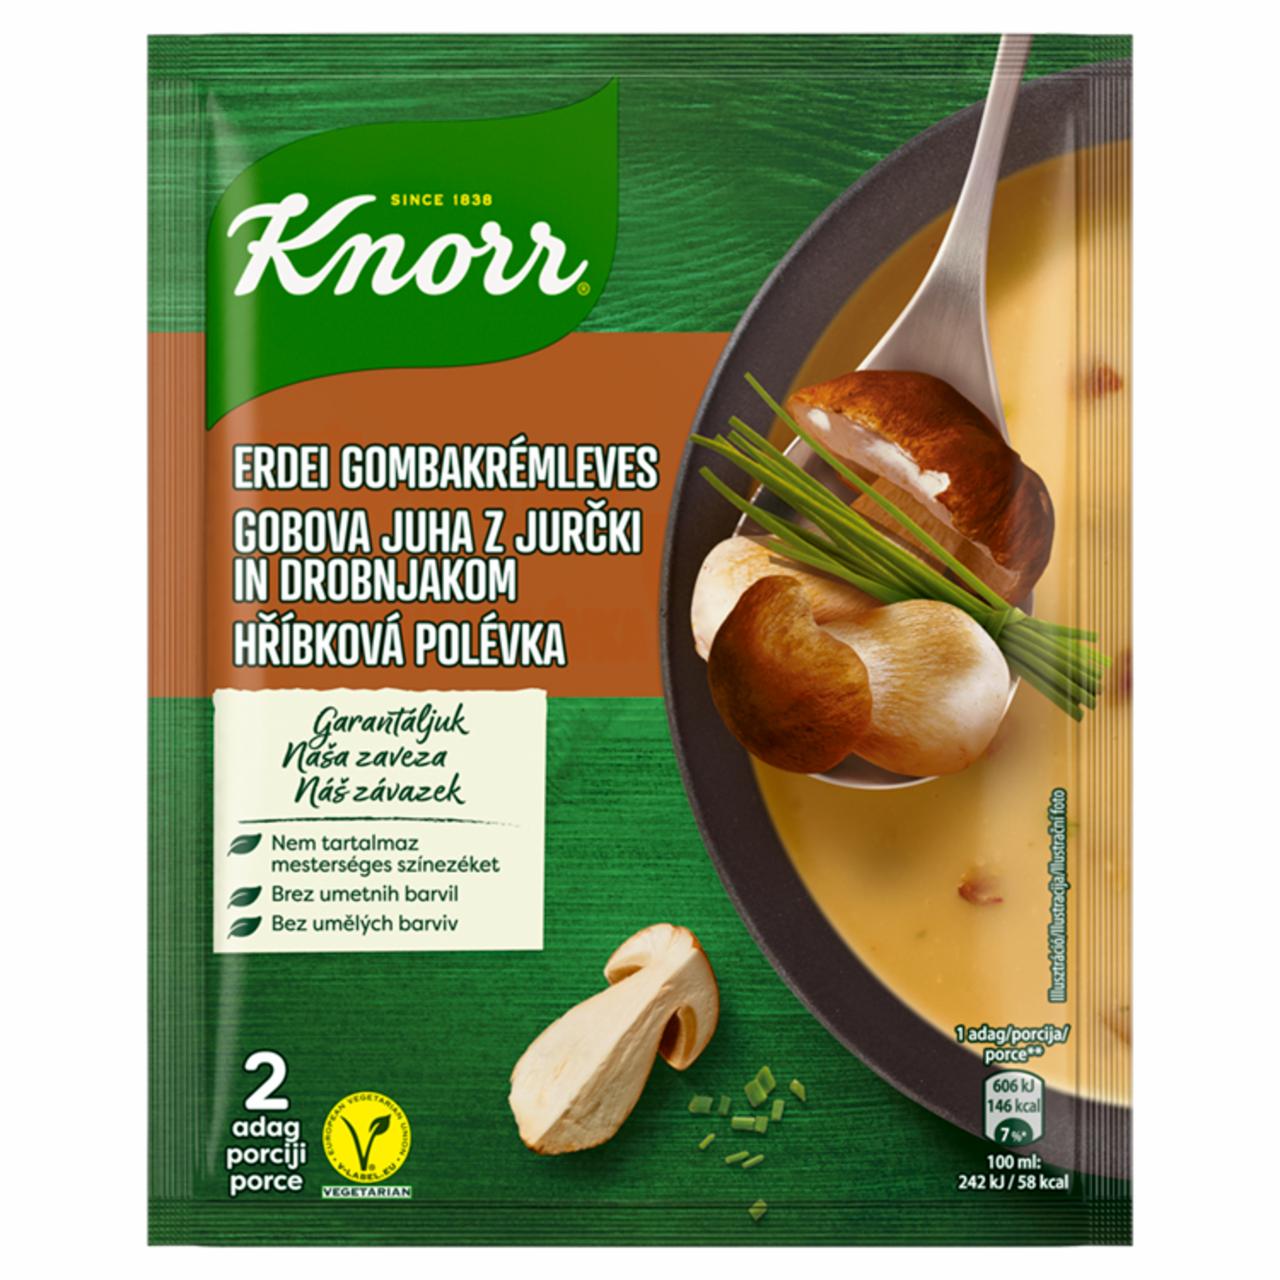 Képek - Knorr erdei gombakrémleves 60 g